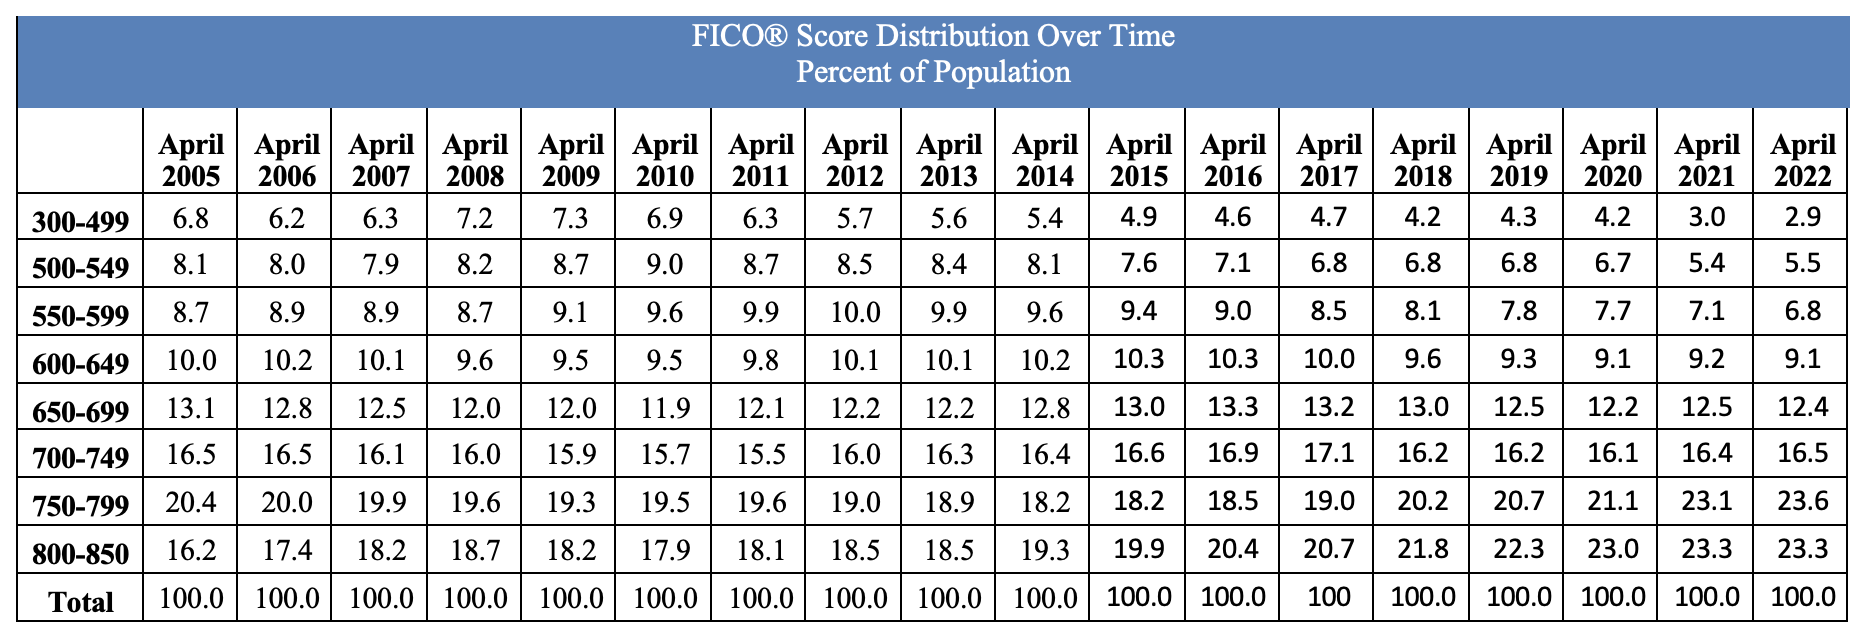 FICO Average Score 2022